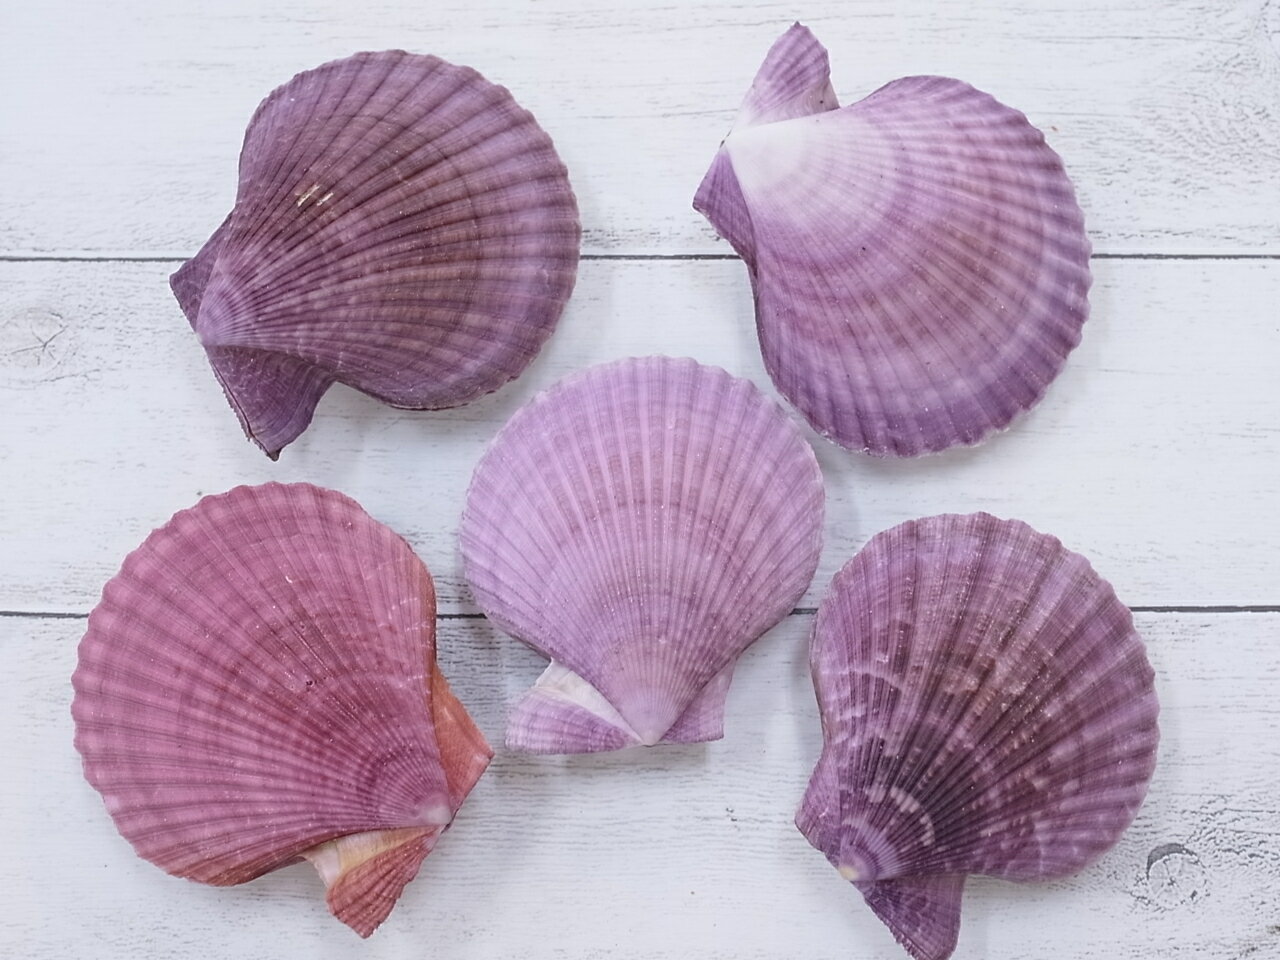 ［二枚貝］ヒオウギガイ両面-紫系-貝 貝殻 シェル 二枚貝 ブライダル ウェルカムボード アクセサリー ハンドメイド